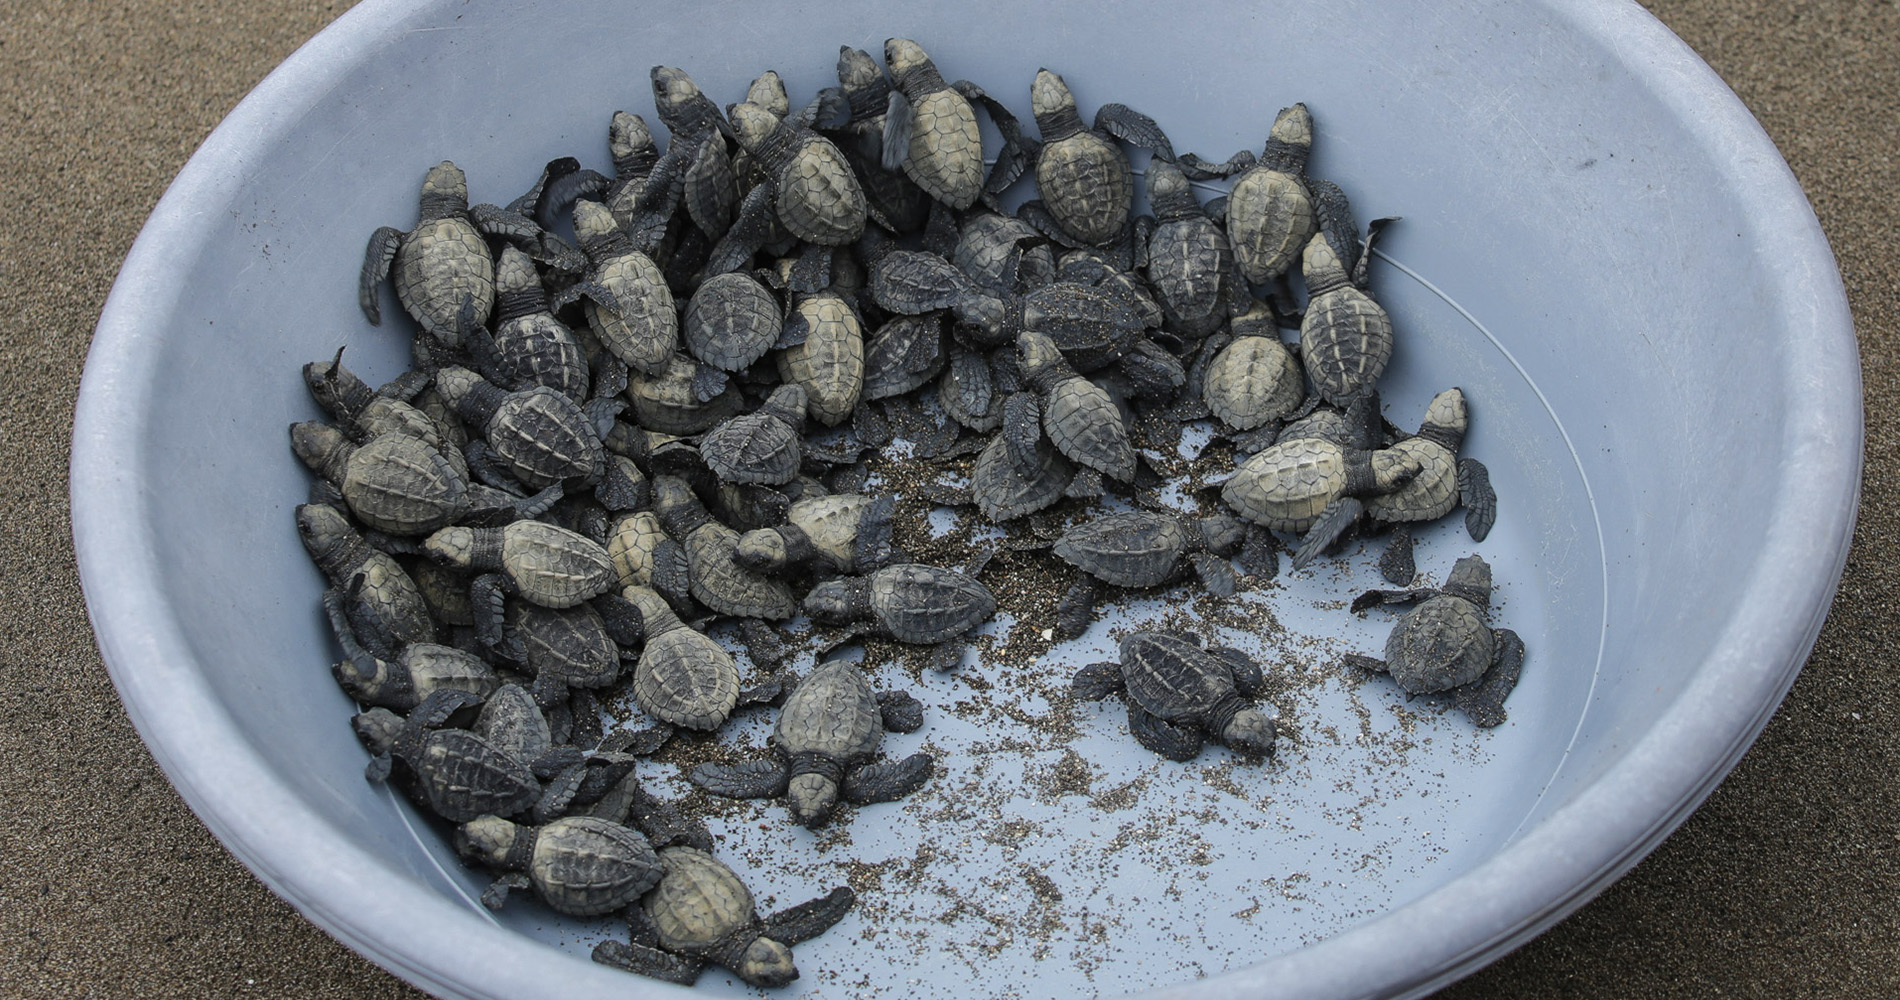 75 tortues attendent d’être libérées